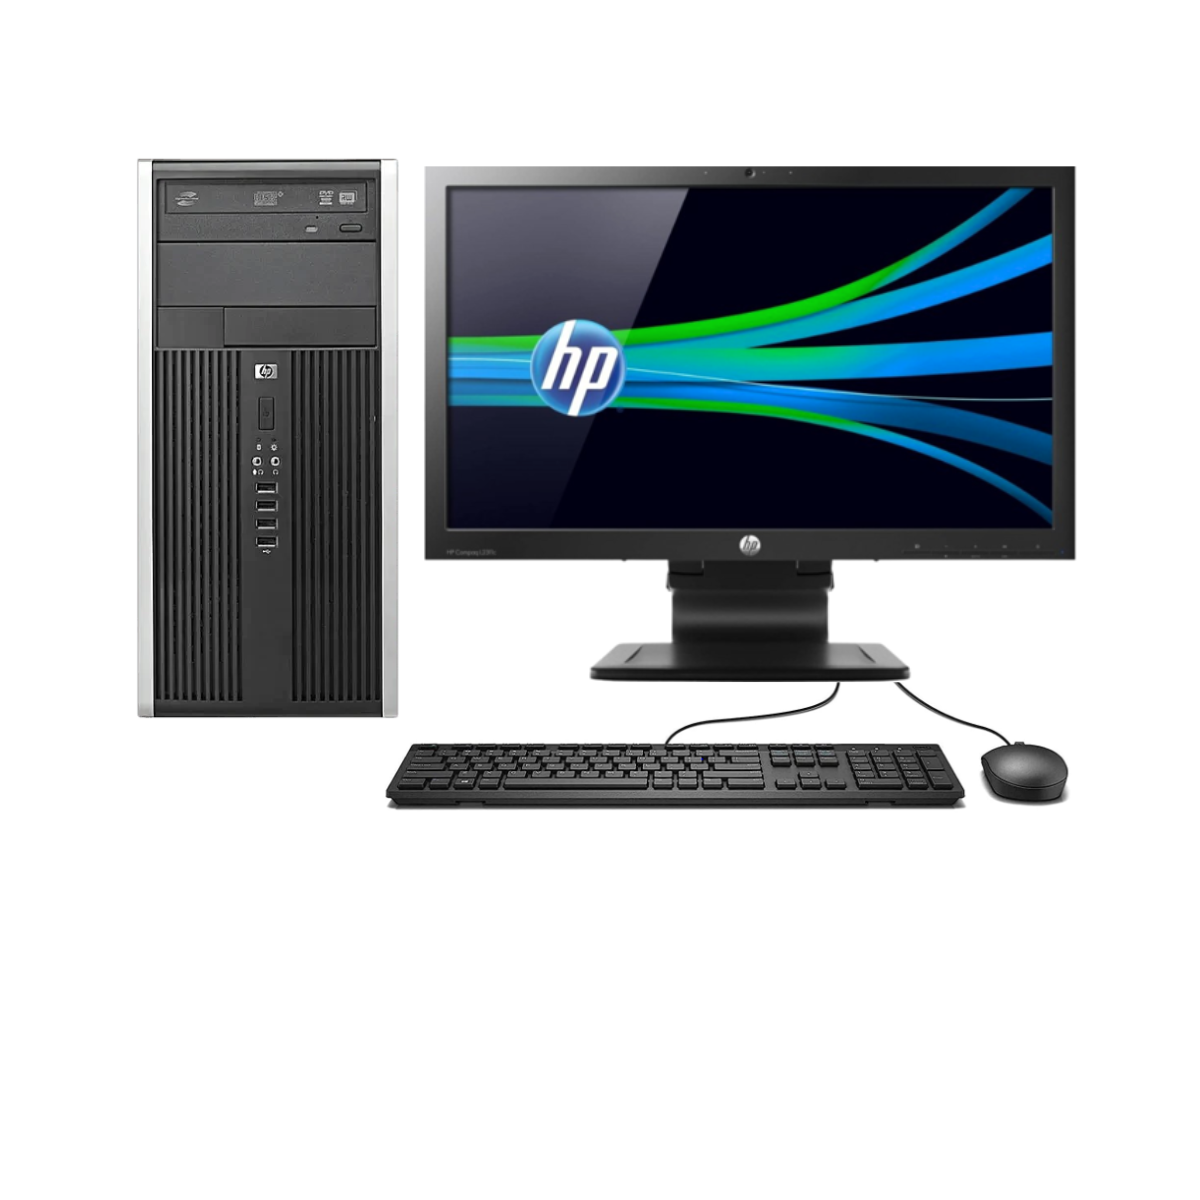 HP Compaq Pro 6300 All-in-One 一体型 PC - デスクトップ型PC